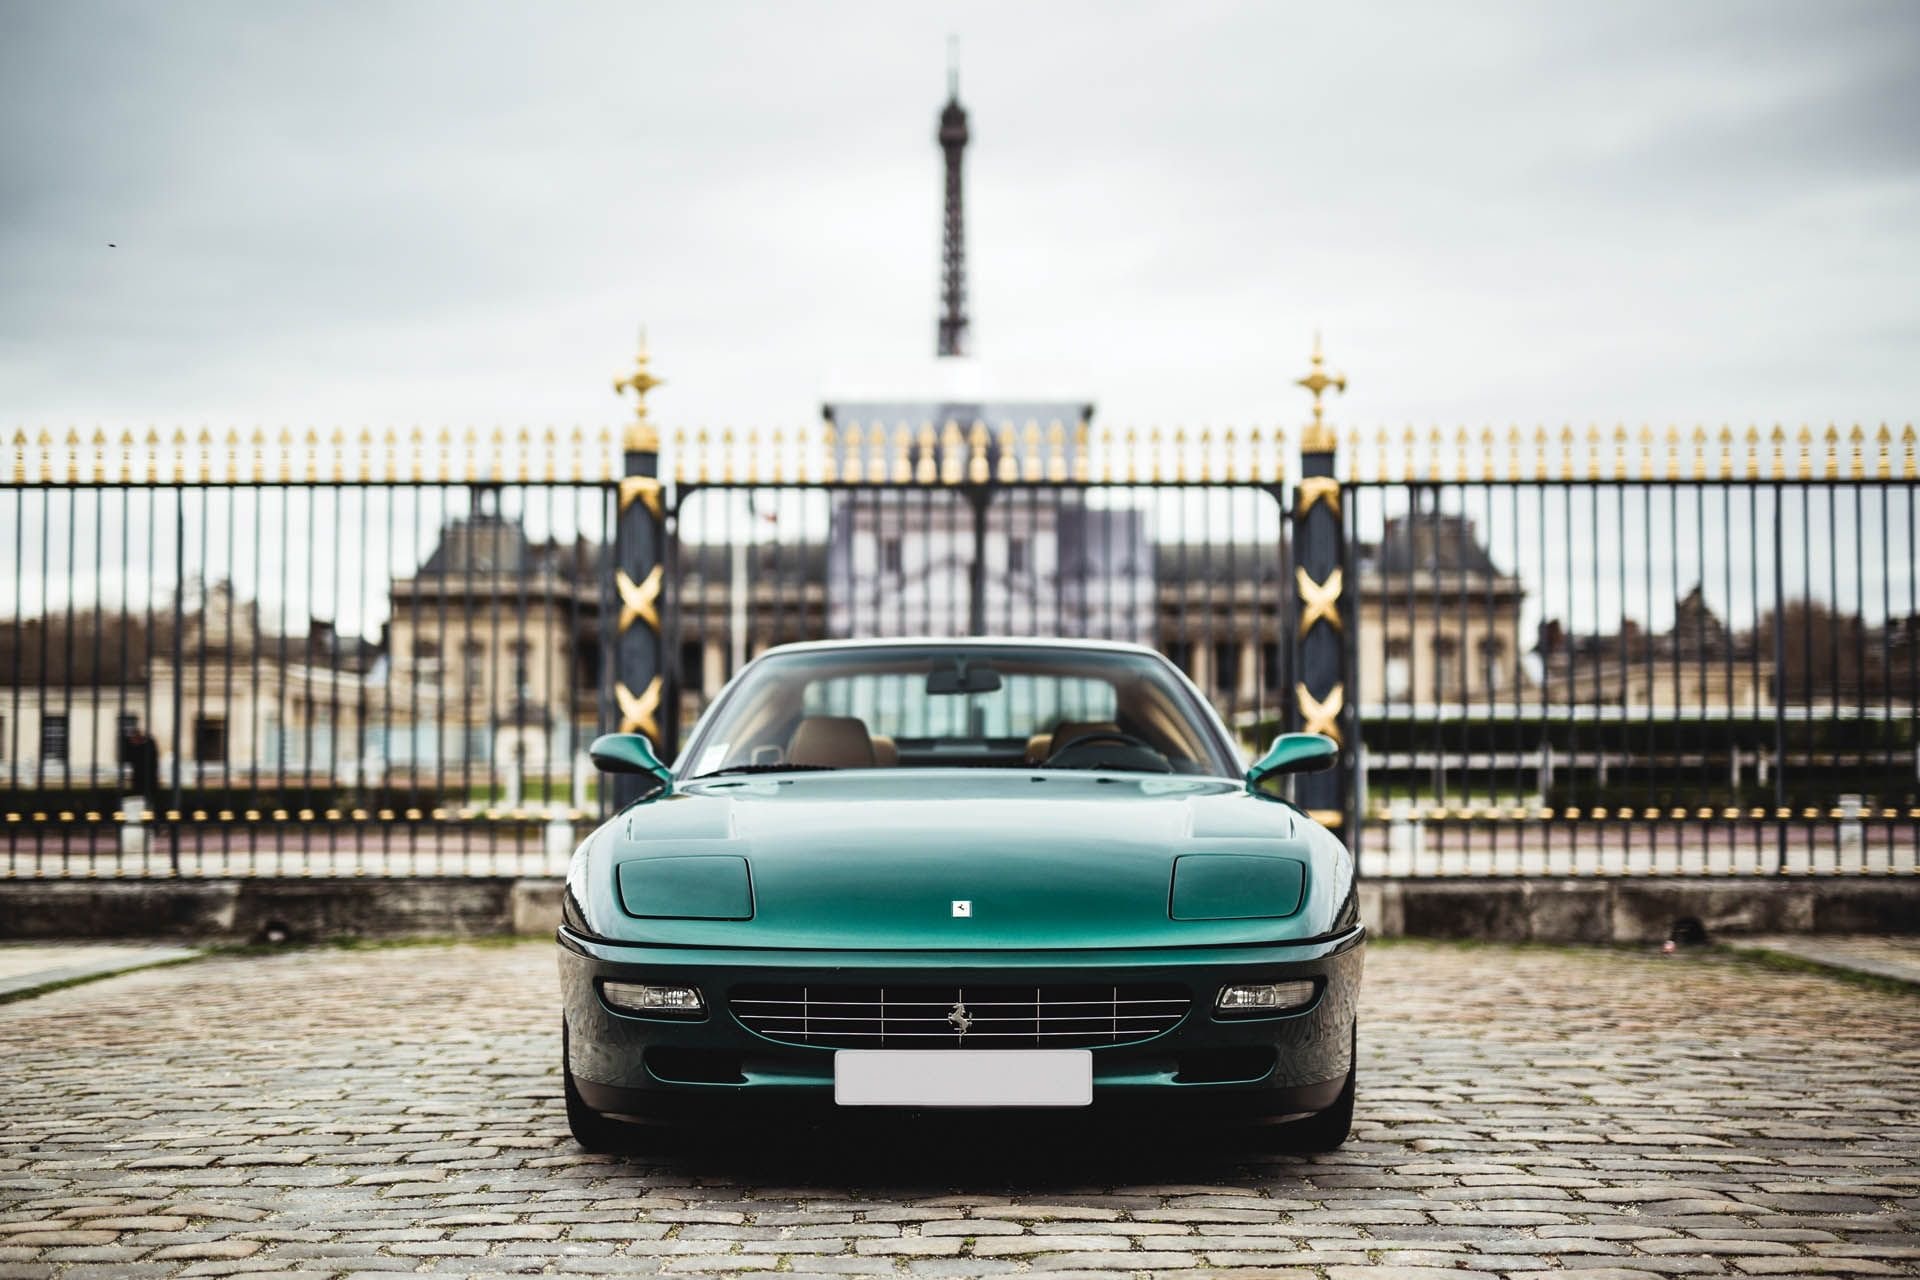 カタールの王族が所有していた1995年製の Ferrari 456 GT がオークションに登場  世界有数の富豪が惚れ込んだ一台は意外なモデルだった？